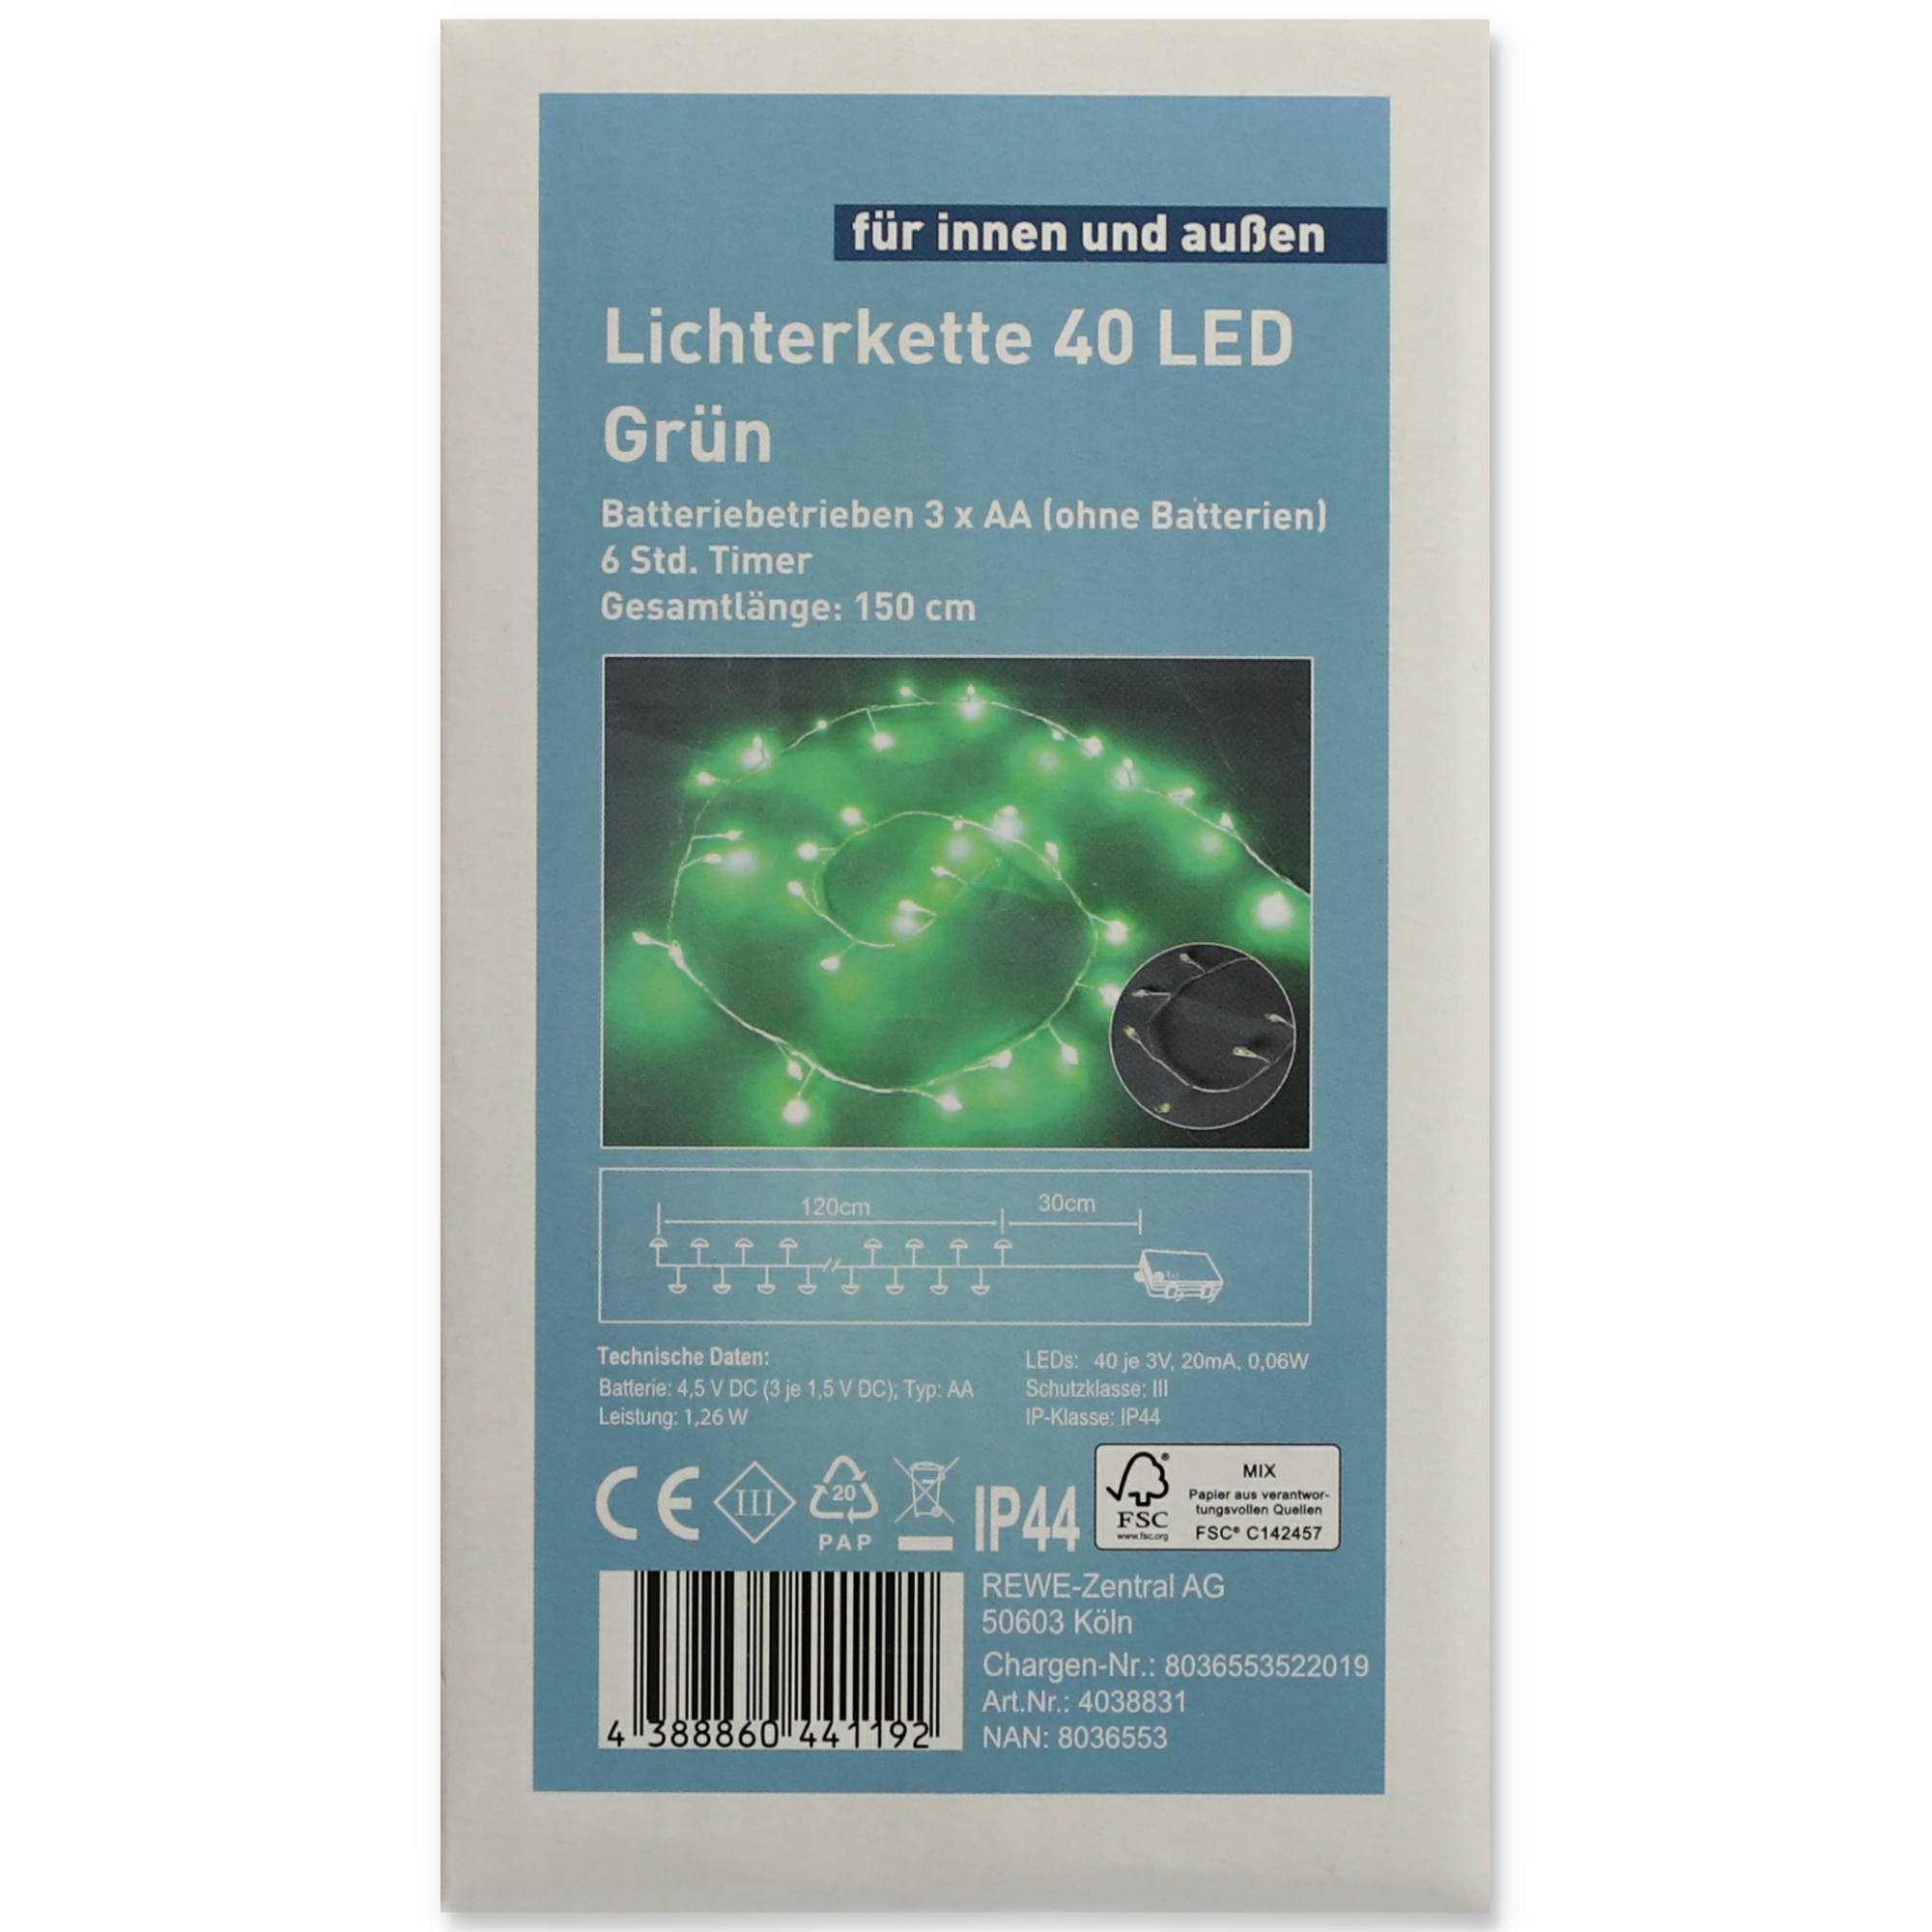 LED-Lichterkette 40 LEDs grün 120 cm + product picture